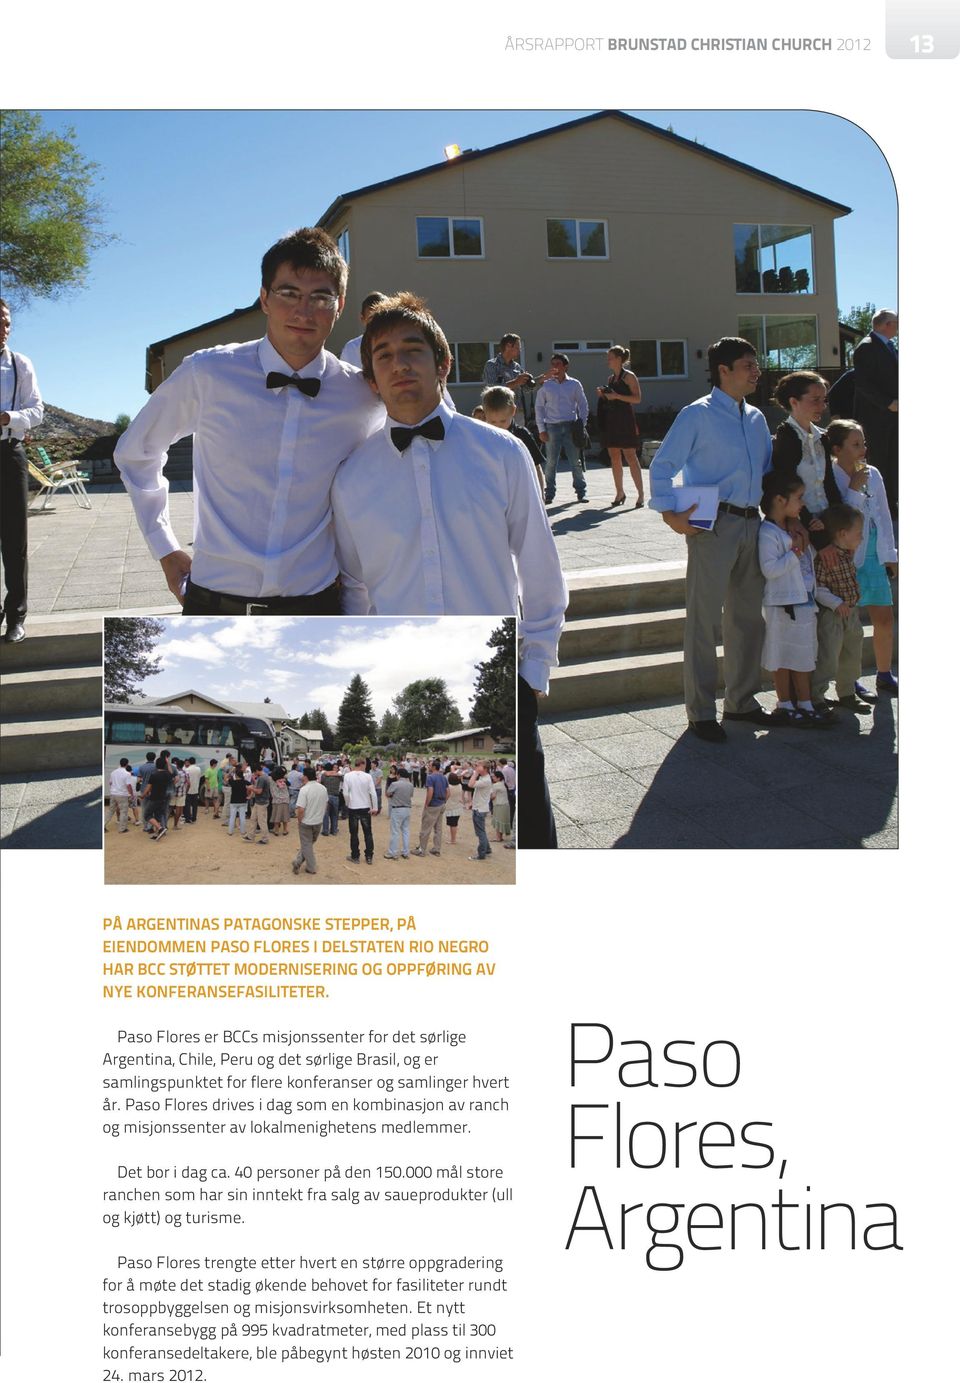 Paso Flores drives i dag som en kombinasjon av ranch og misjonssenter av lokalmenighetens medlemmer. Det bor i dag ca. 40 personer på den 150.